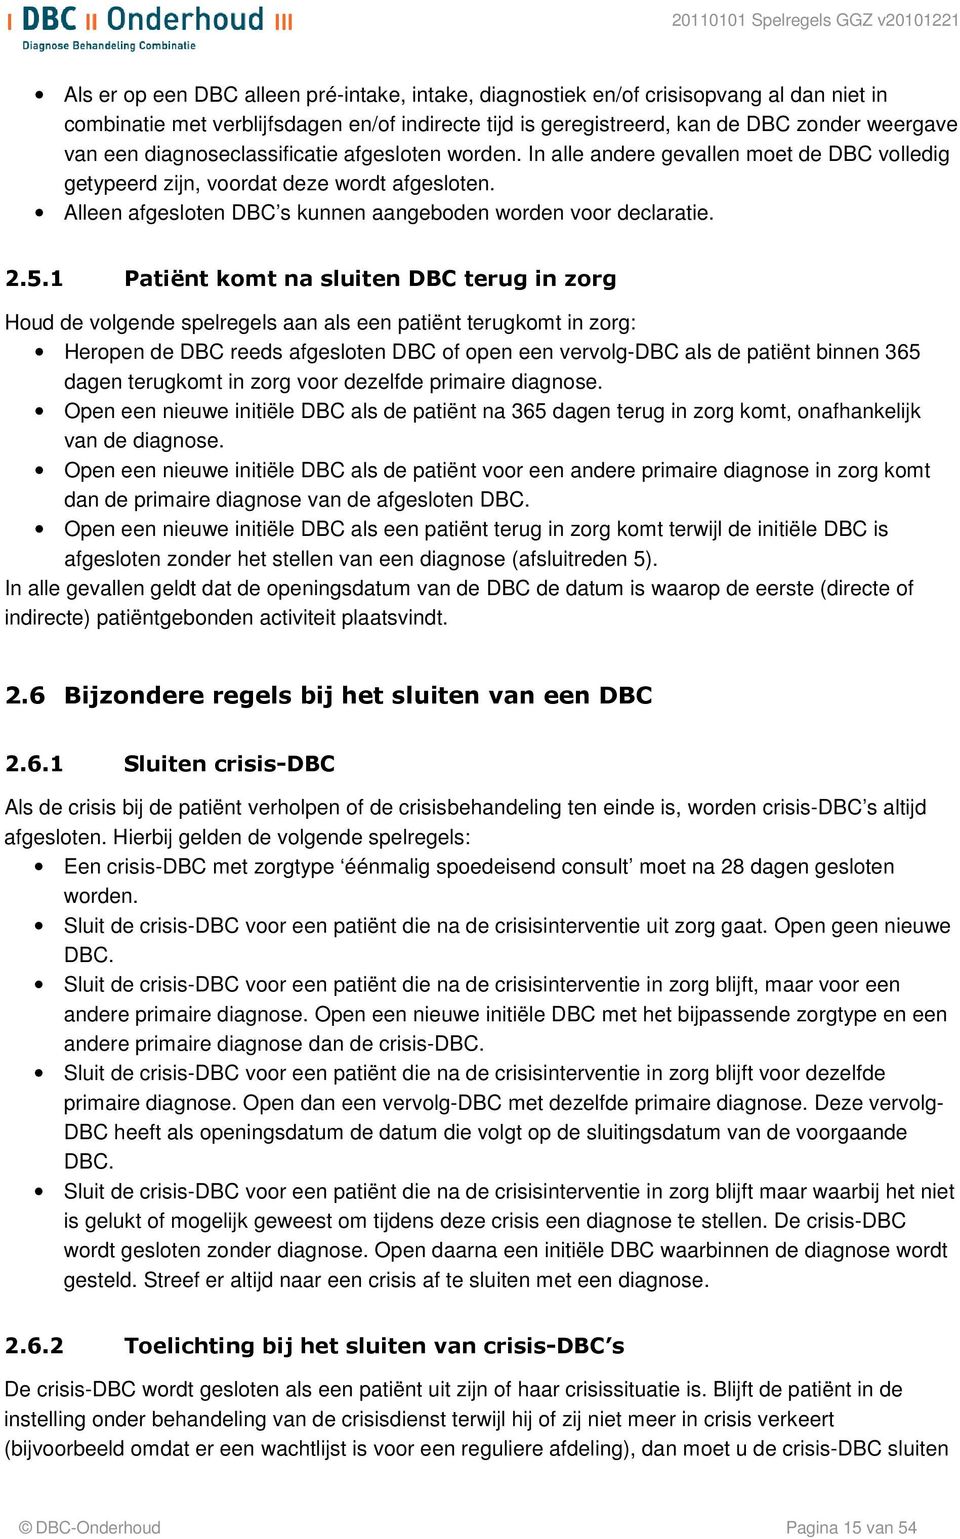 2.5.1 Patiënt komt na sluiten DBC terug in zorg Houd de volgende spelregels aan als een patiënt terugkomt in zorg: Heropen de DBC reeds afgesloten DBC of open een vervolg-dbc als de patiënt binnen